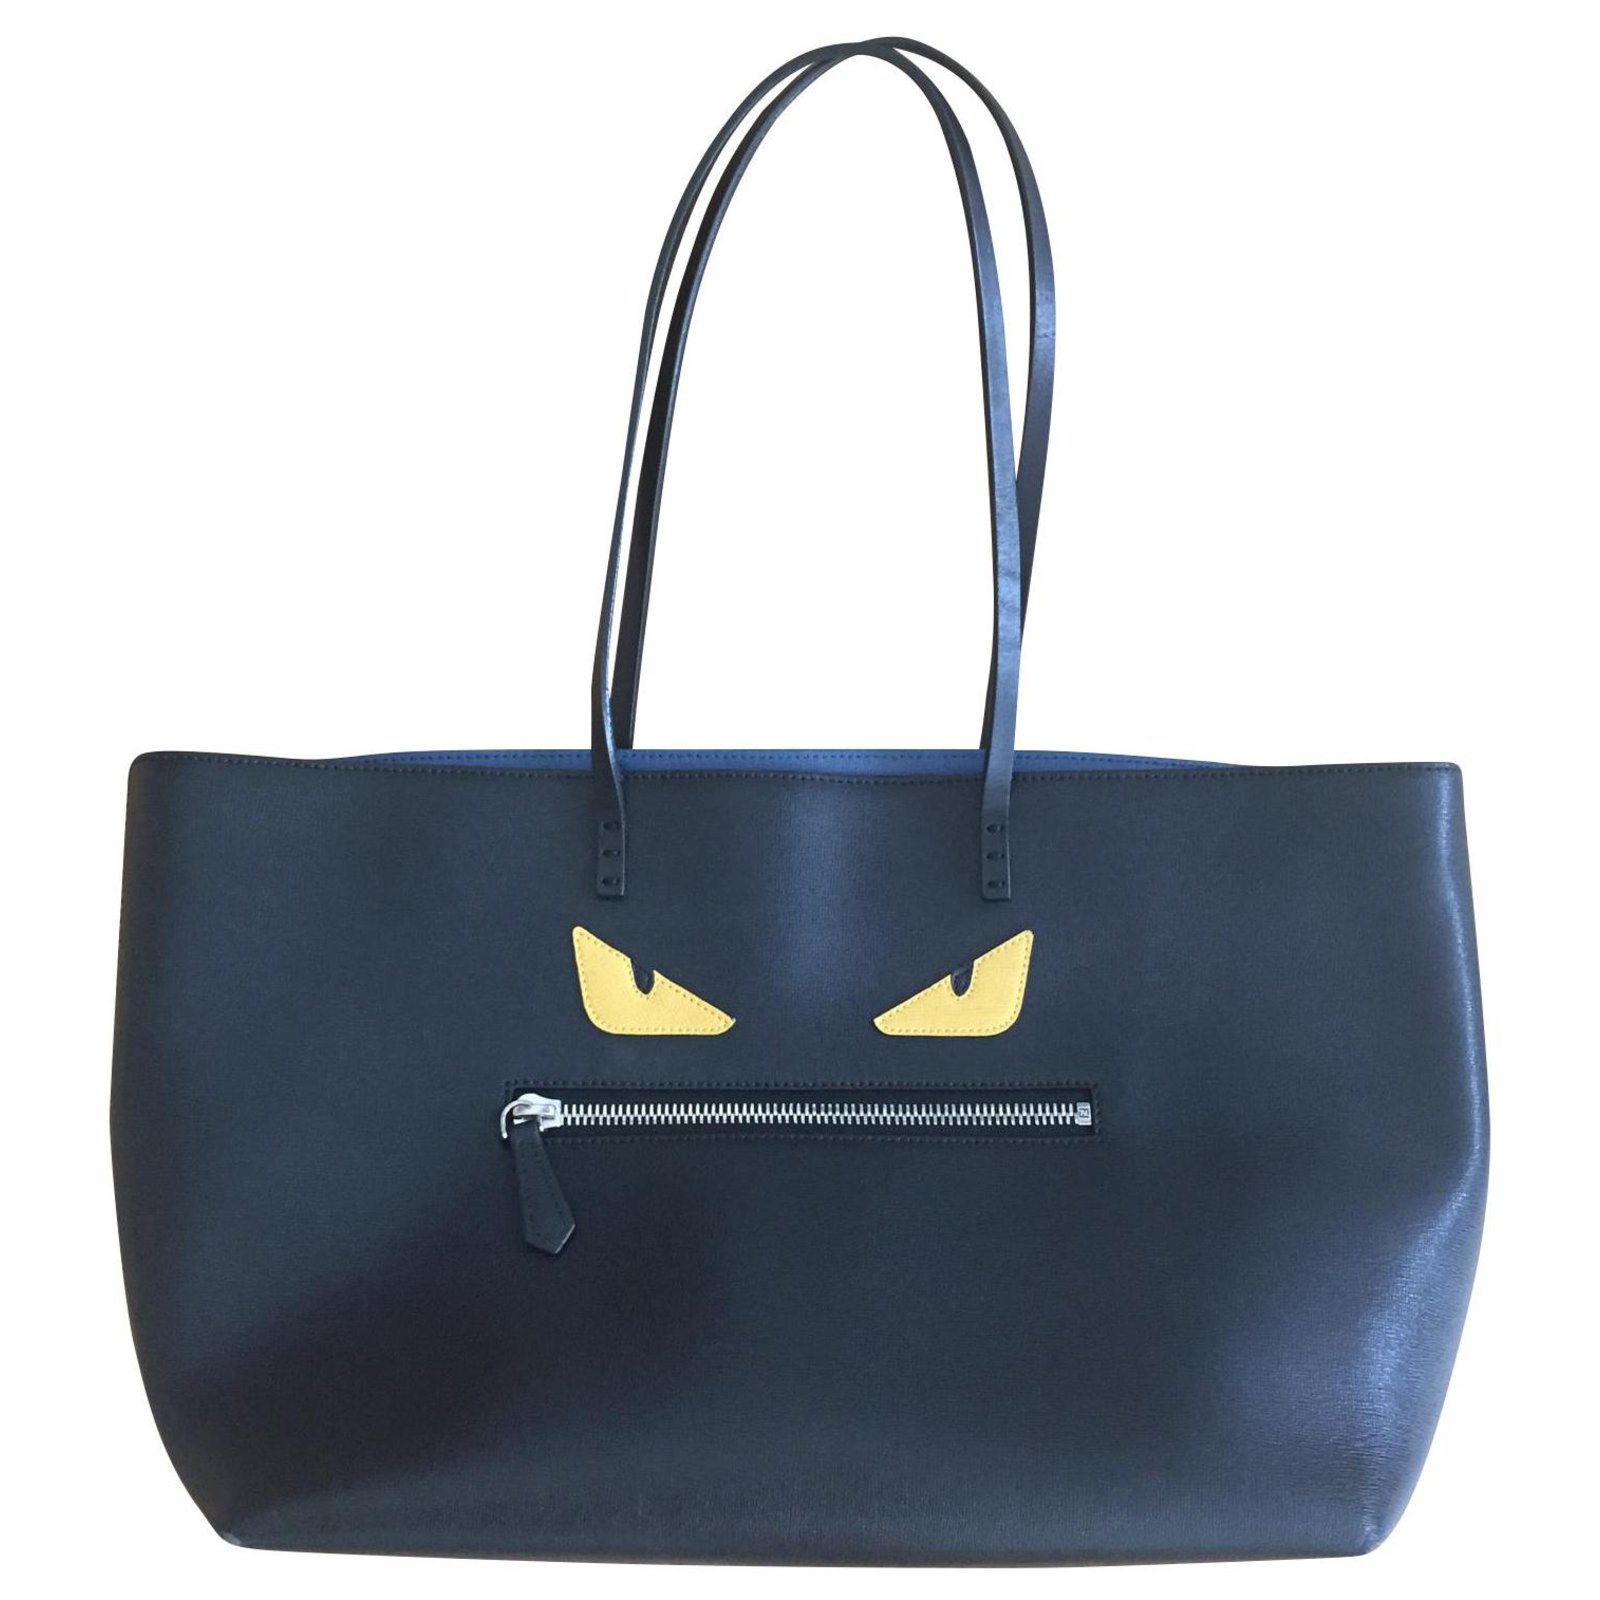 Fendi Fendi Monster bag Handbags 